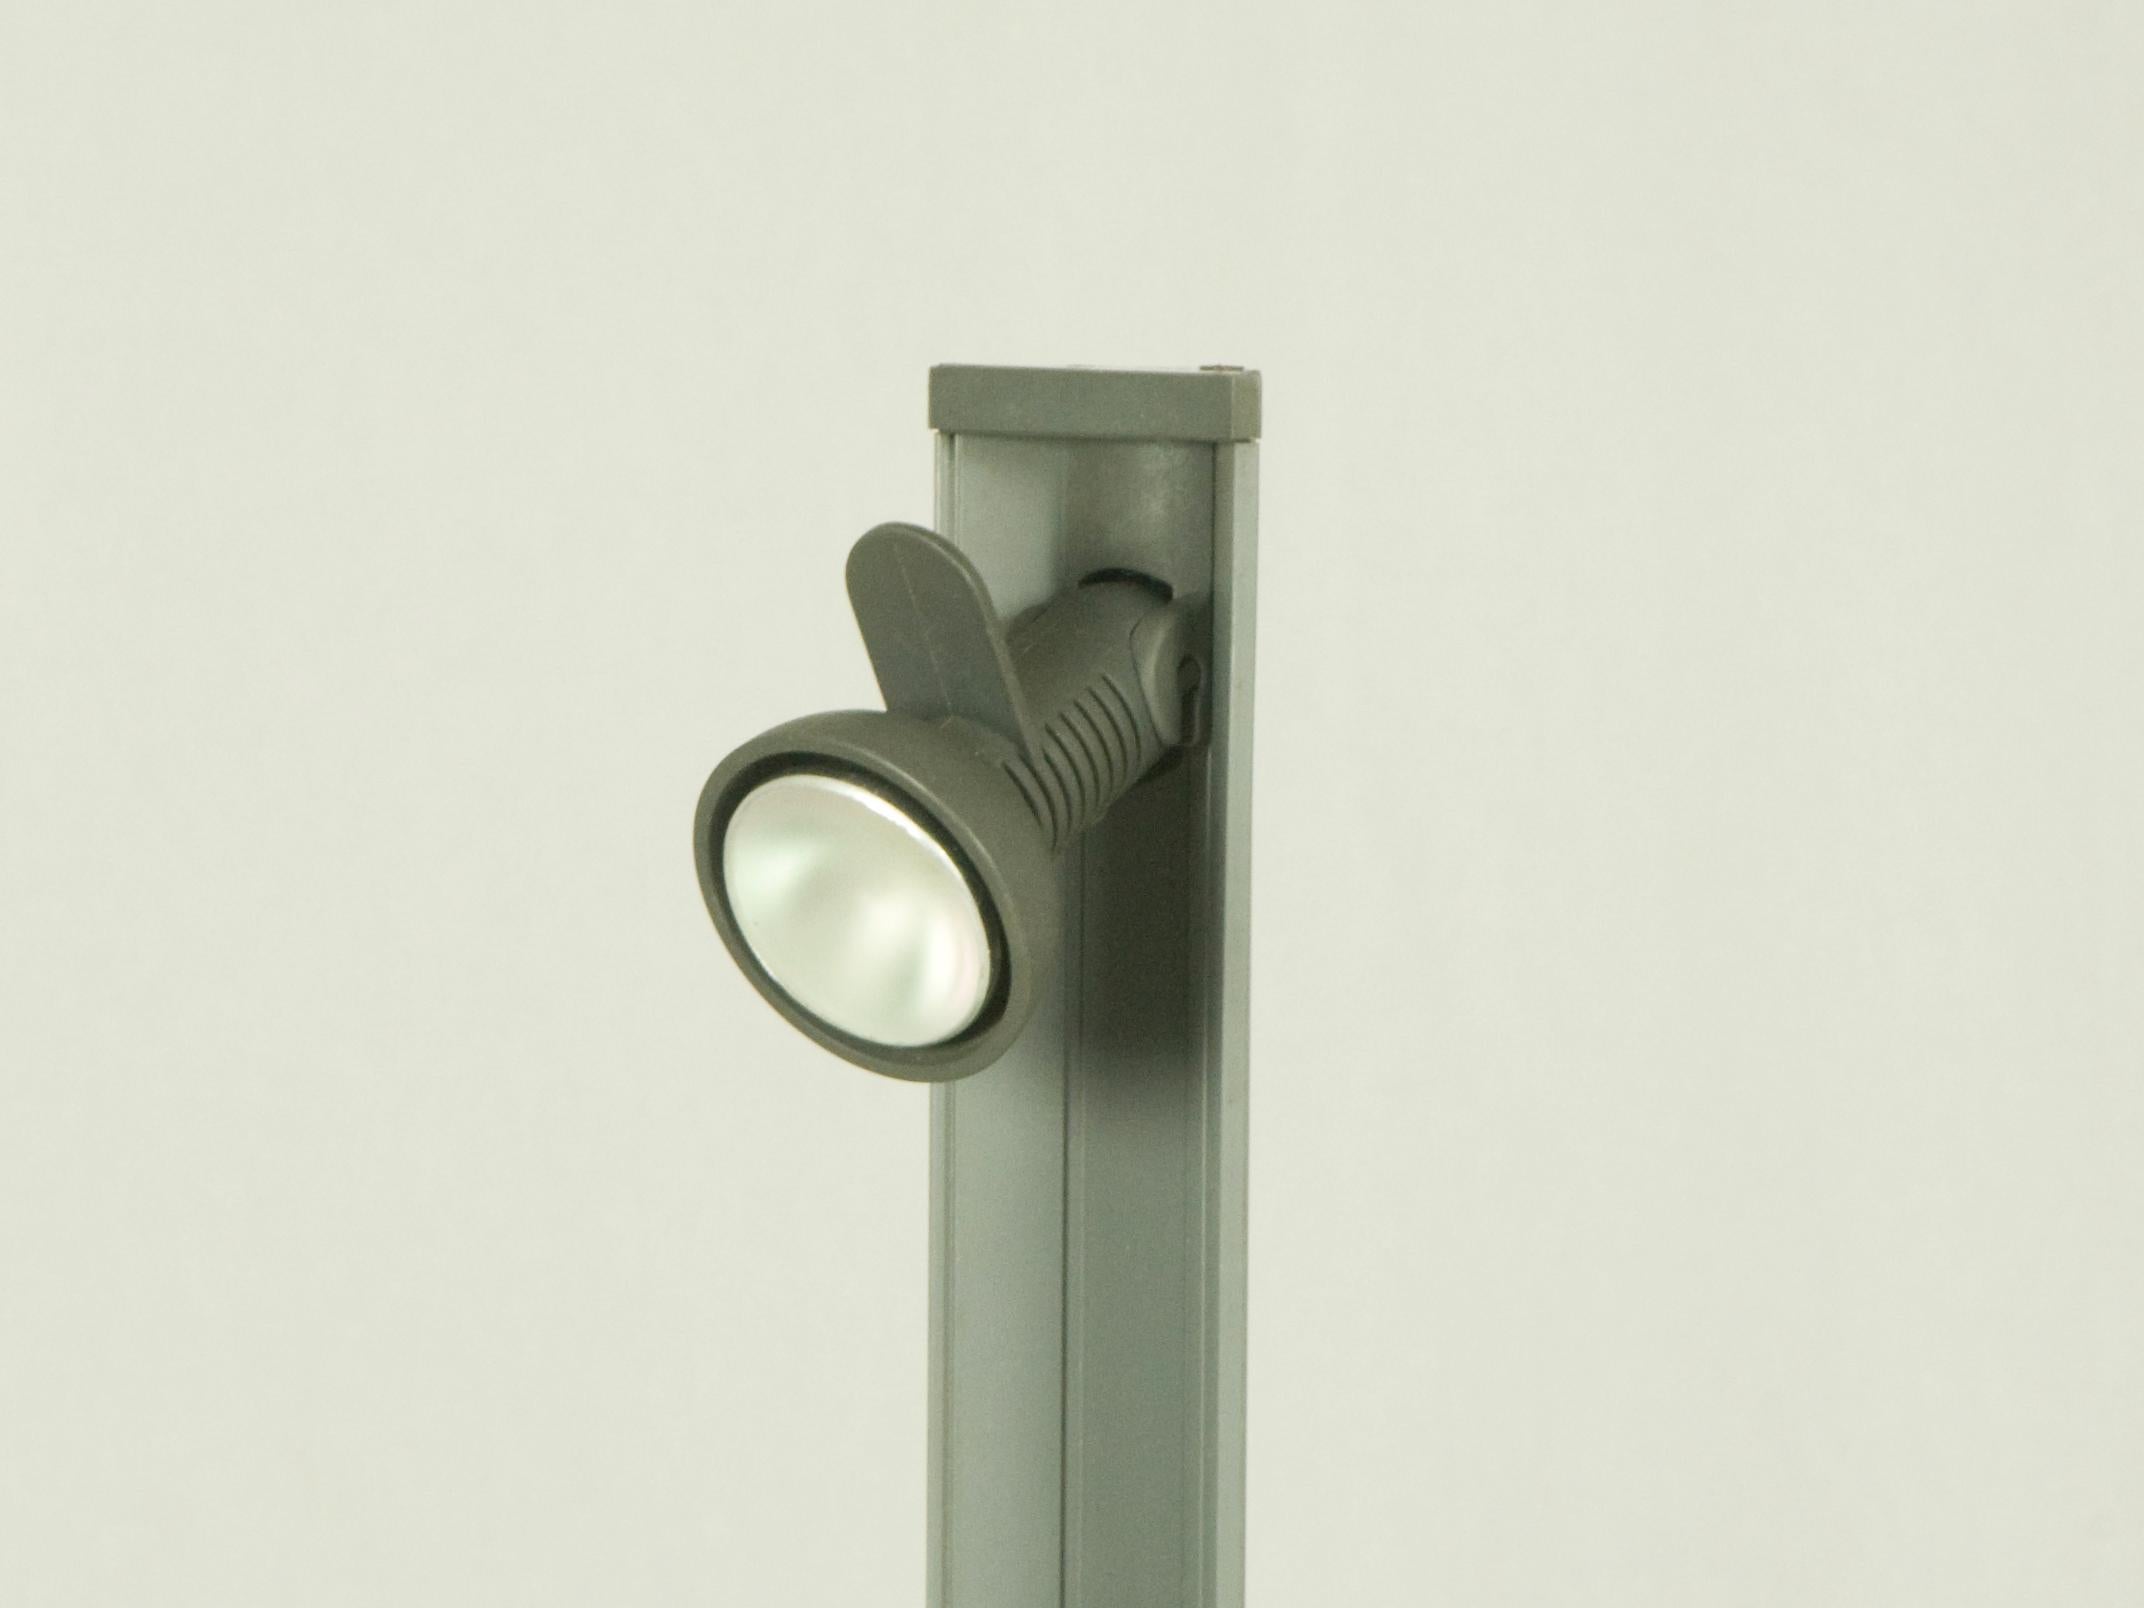 Cette lampe en plastique peut être allumée/éteinte en touchant simplement le couvercle triangulaire situé sur le dessus de la lampe. Il est en bon état : usure légère correspondant à l'usage.